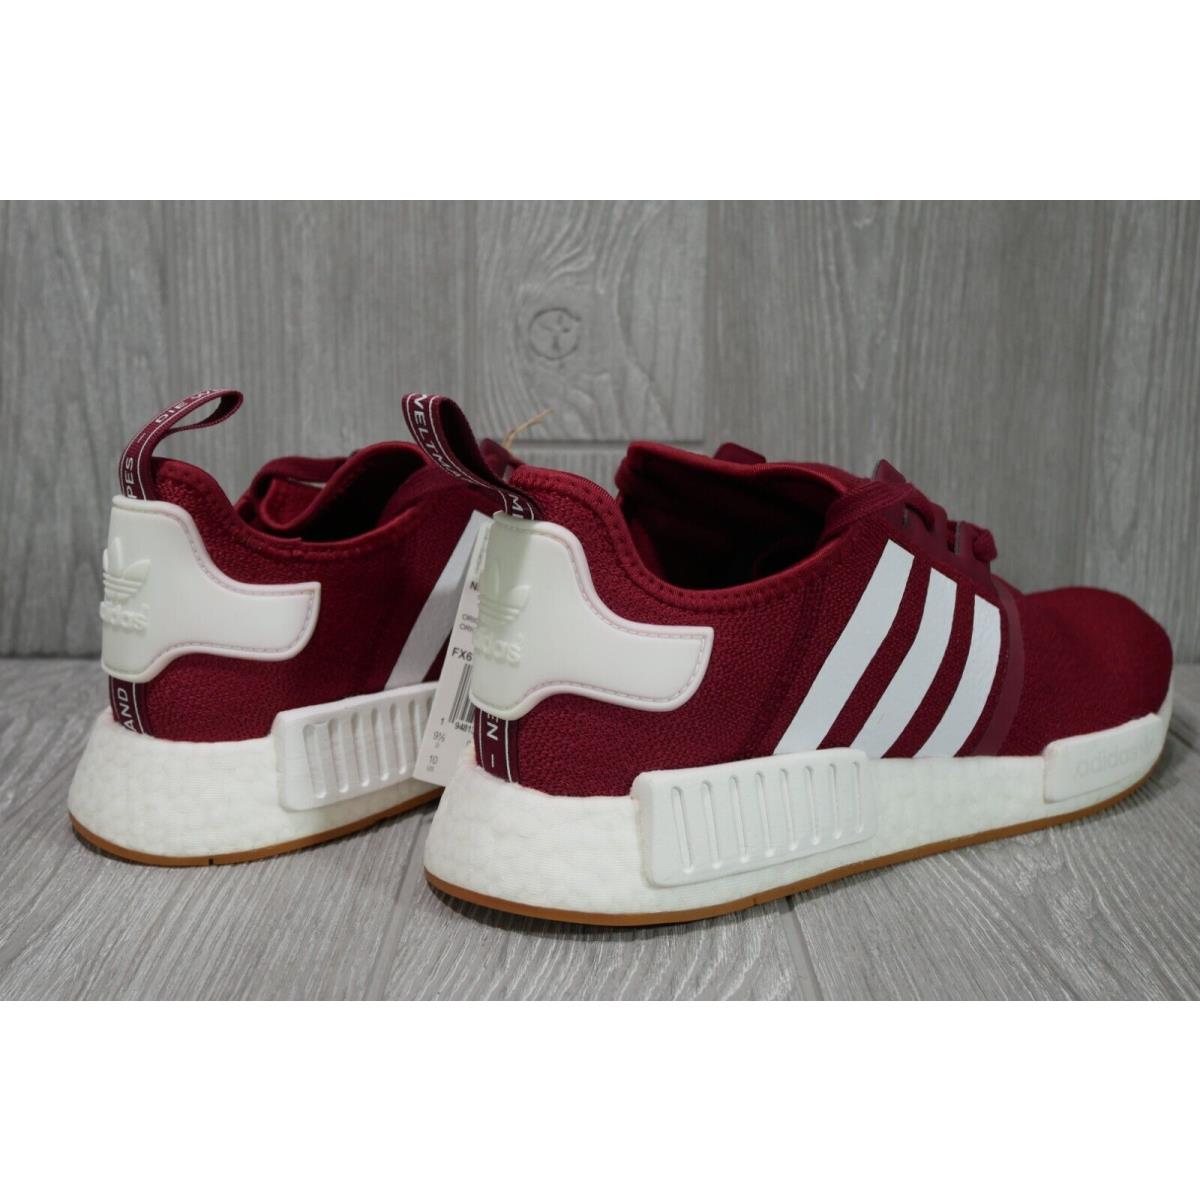 Adidas shoes Originals - Red 3